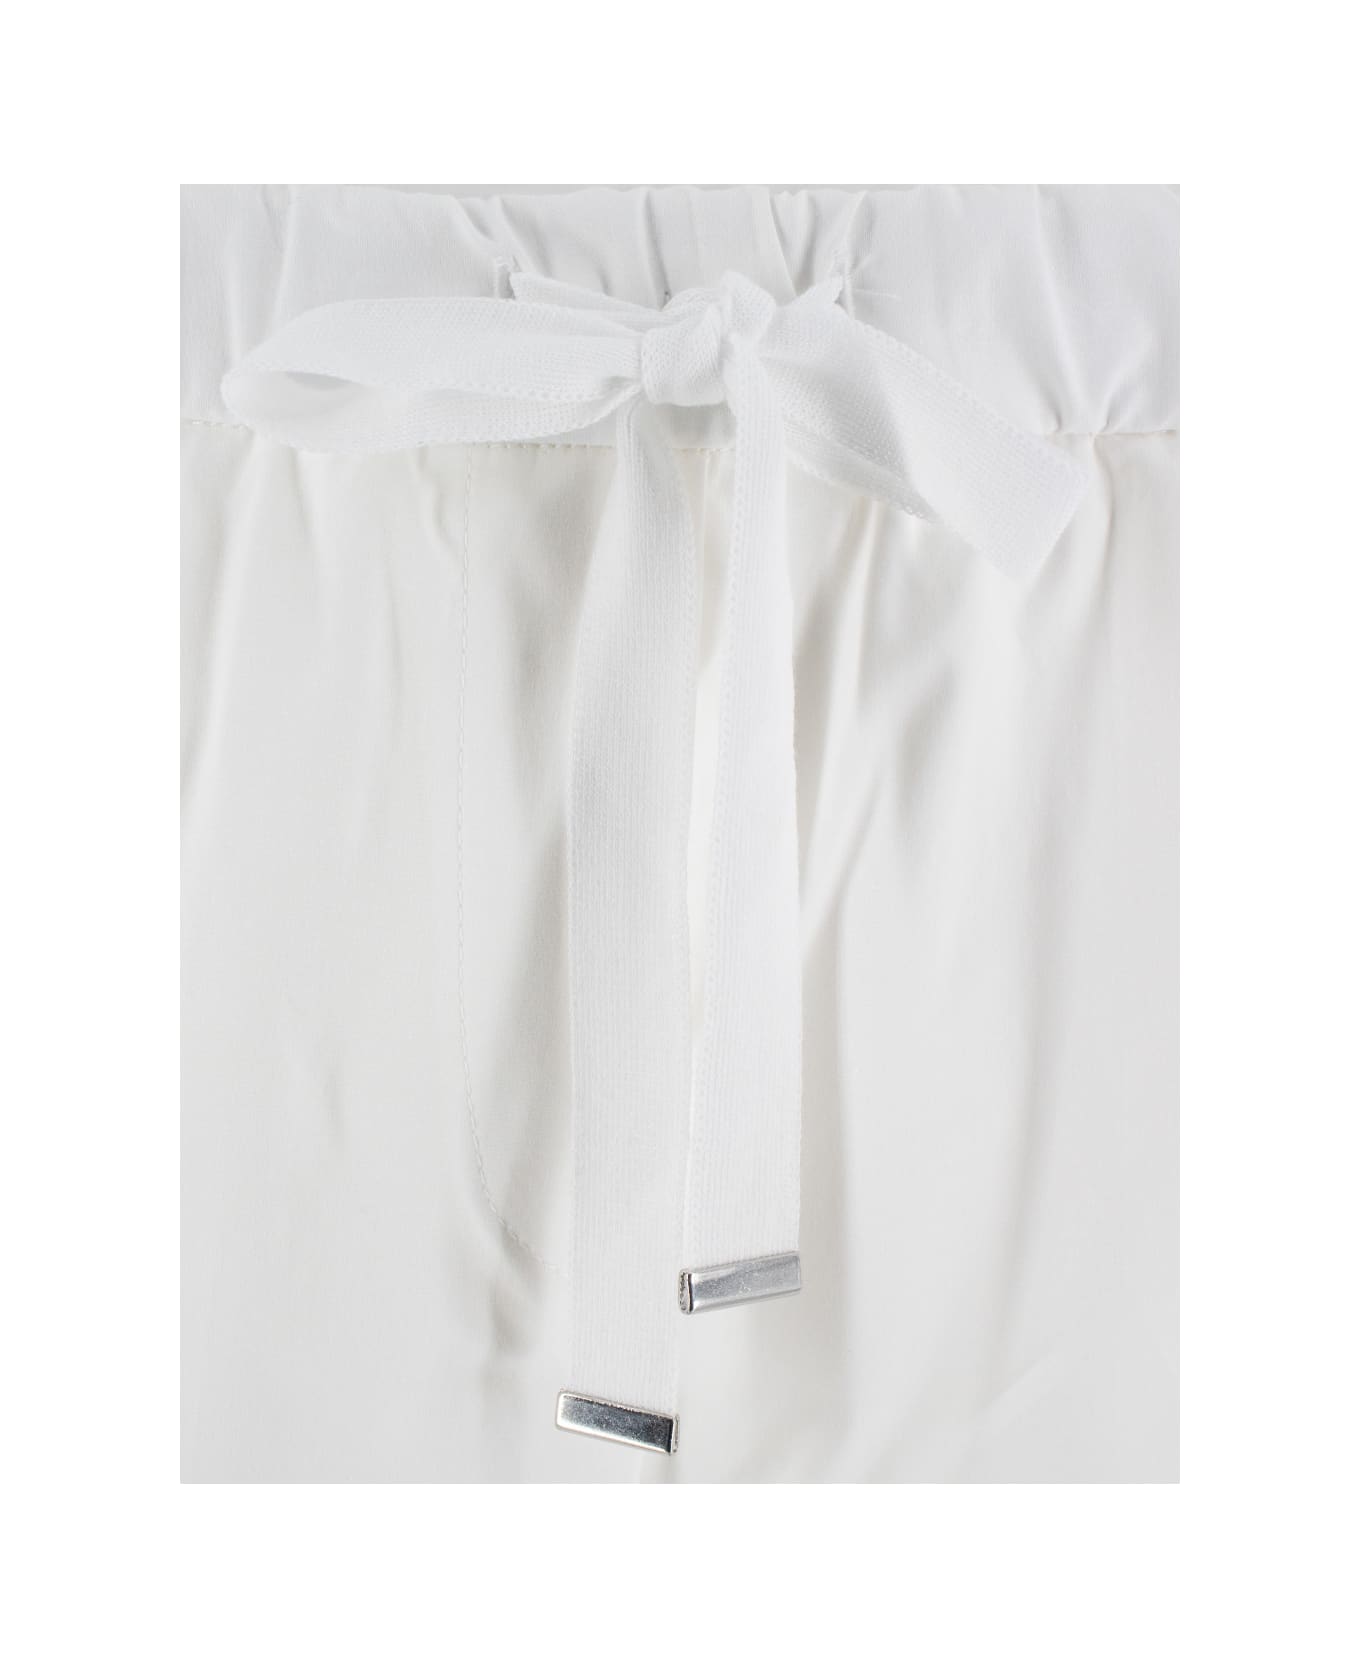 Le Tricot Perugia Trousers - WHITE